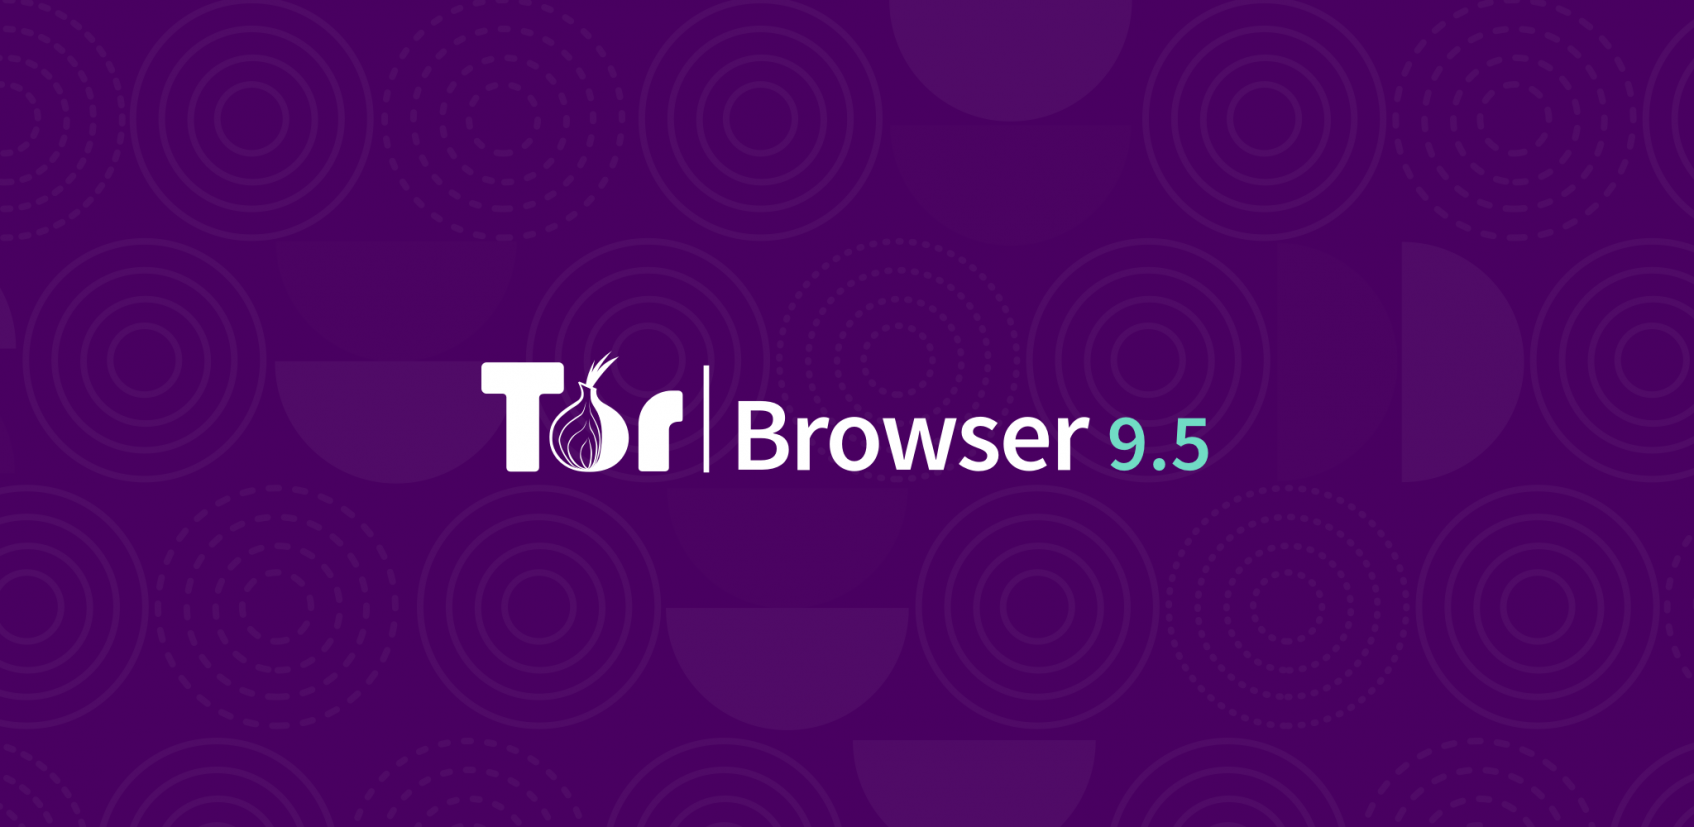 Start tor browser скачать бесплатно на русском hydra2web гайд тор браузер hyrda вход